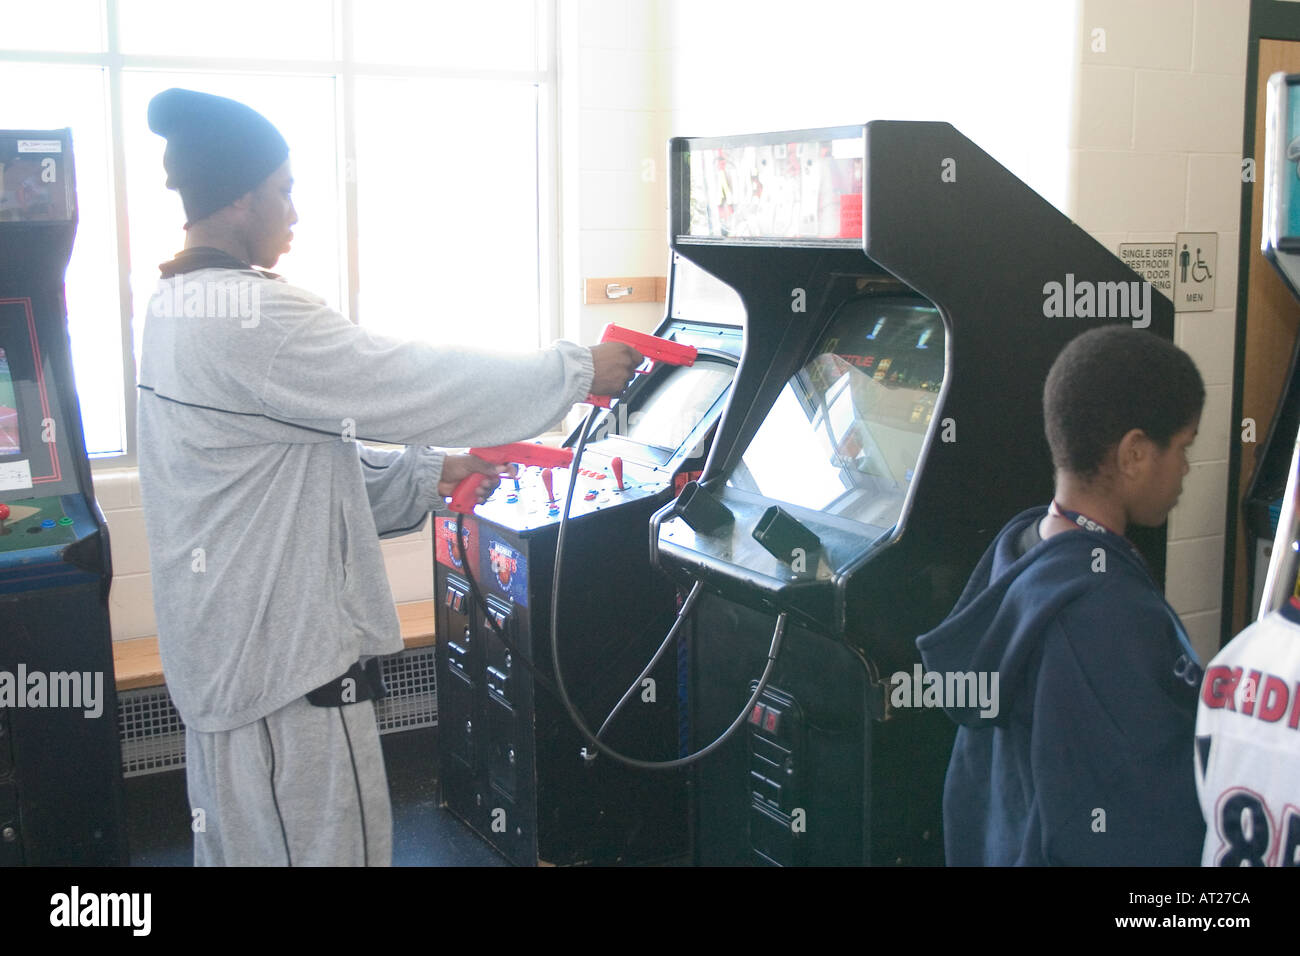 Teenager-Alter 17 amüsiert sich bei einer Schießbude Arcade-Videospiel. St Paul Minnesota MN USA Stockfoto